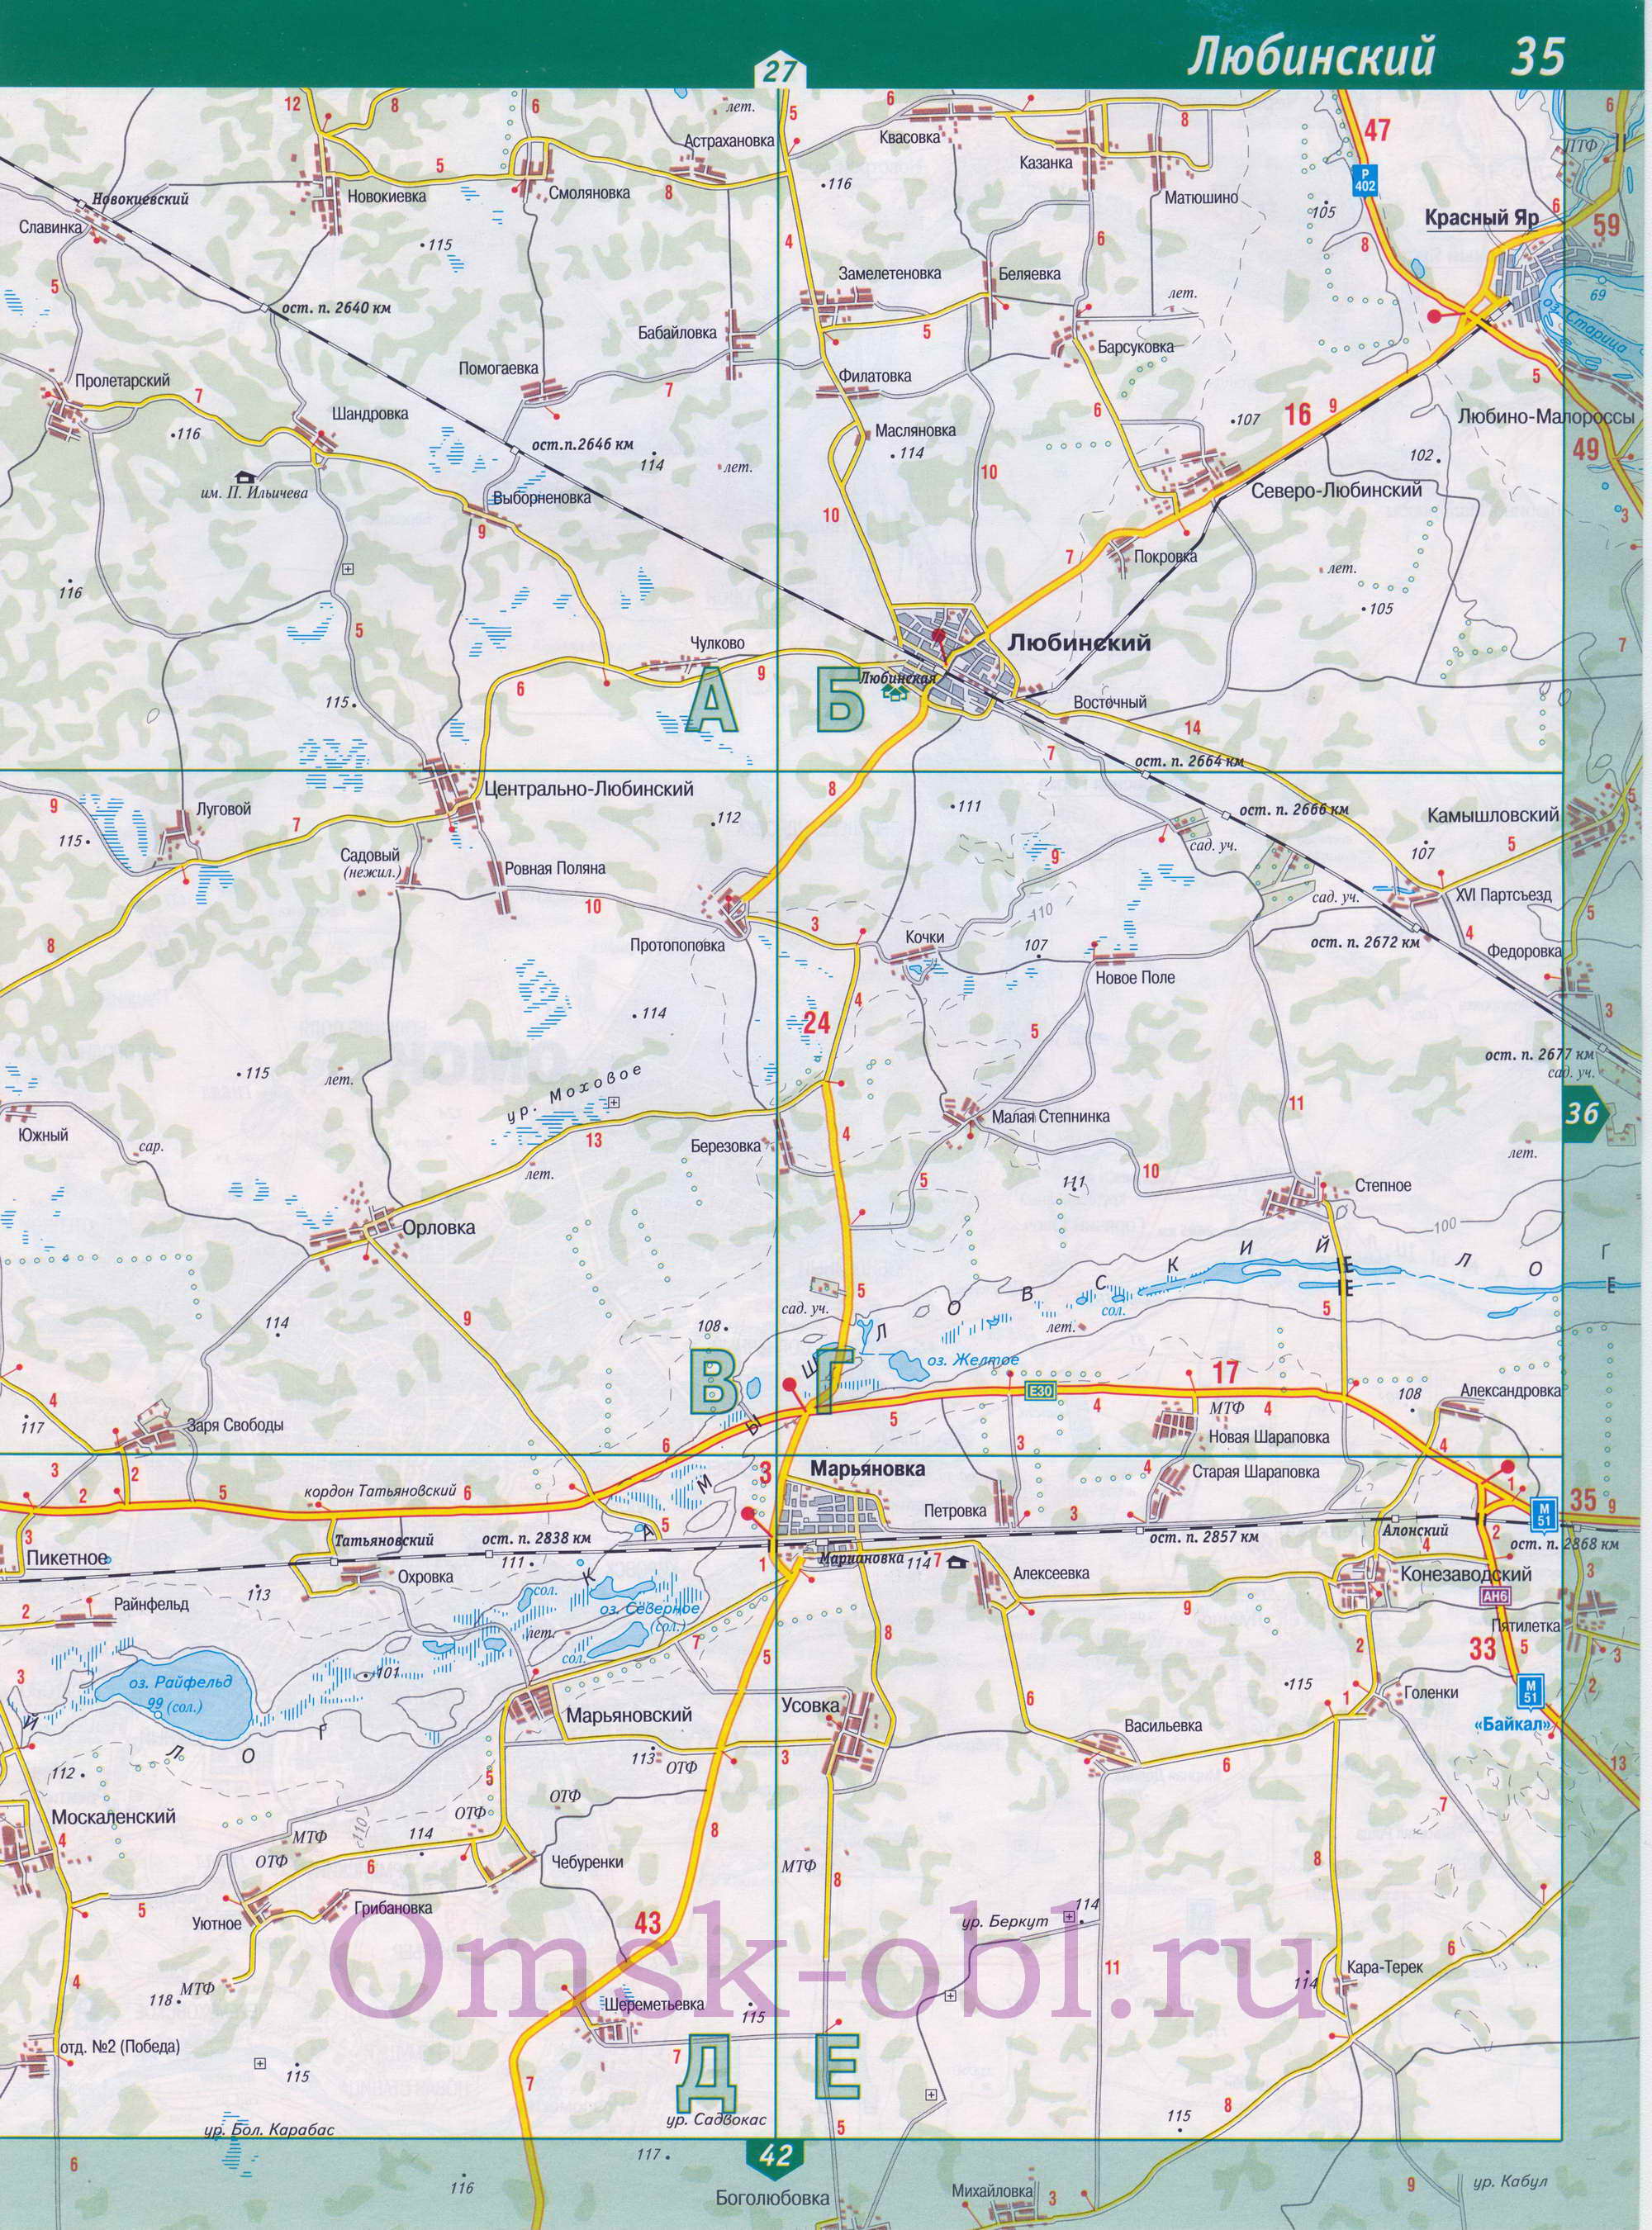 Карта Марьяновского района. Подробная карта автодорог Омской области - Марьяновский район, A1 - 